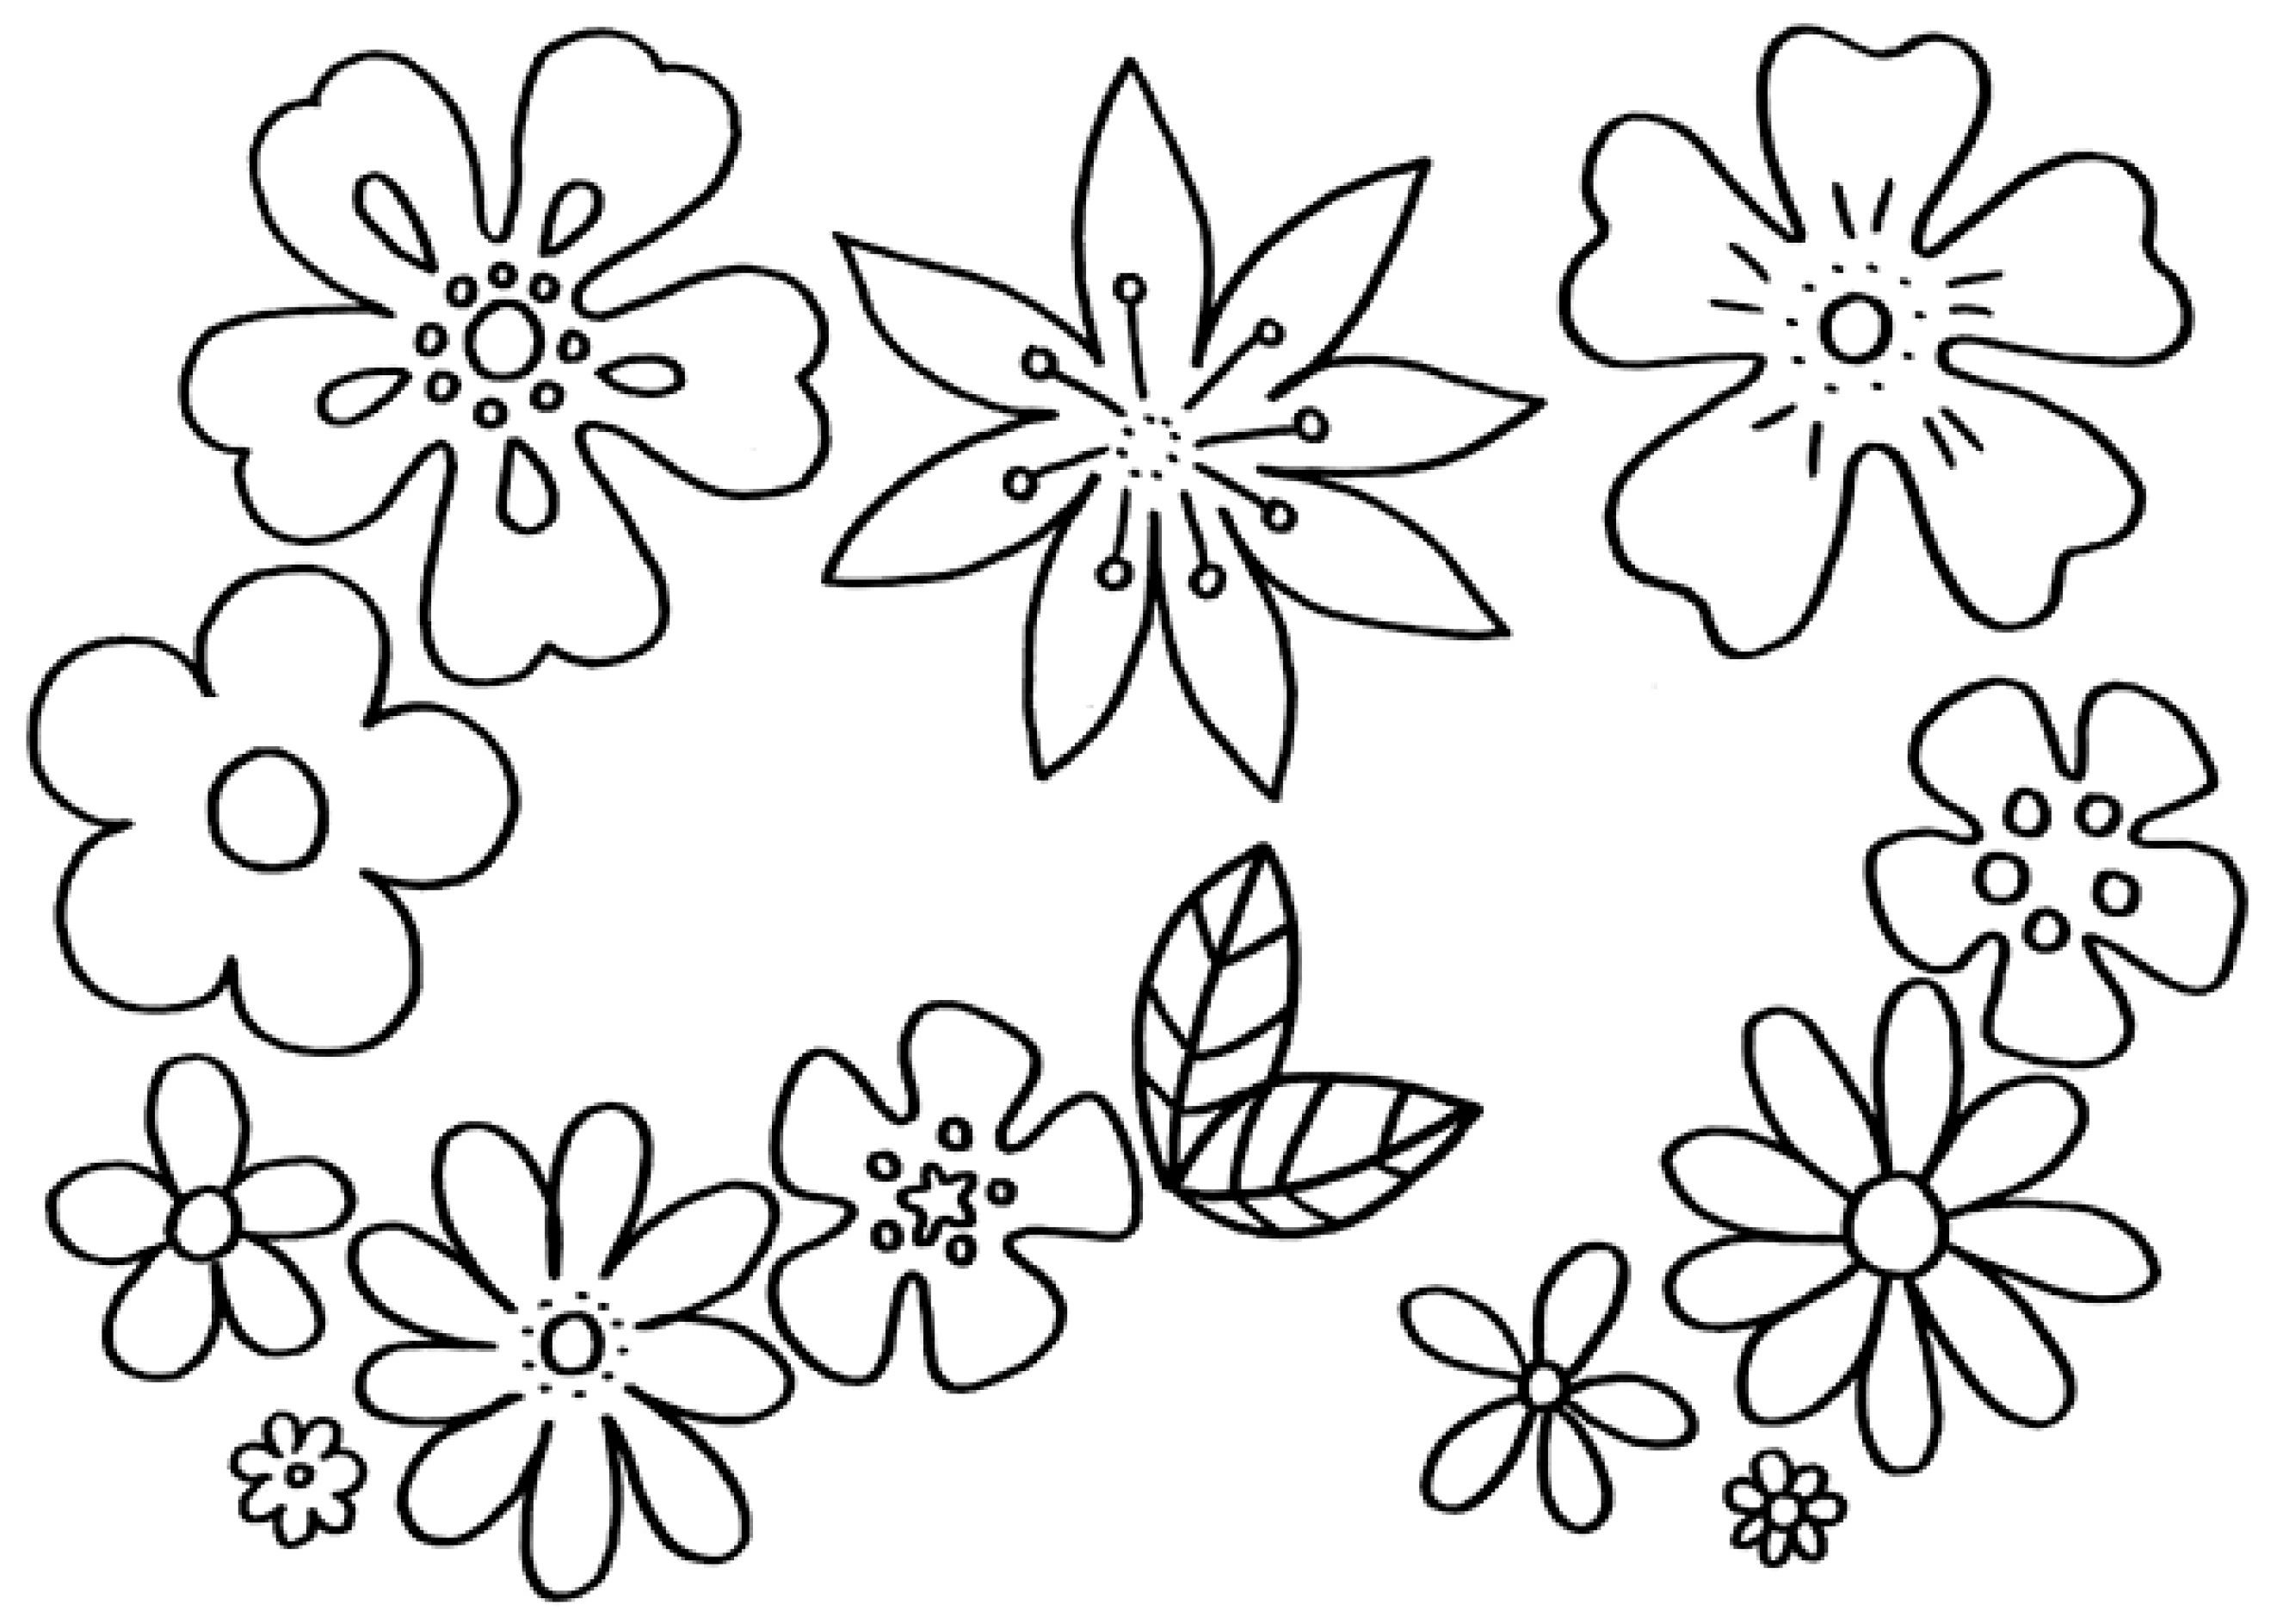 Ausmalbilder Blumen Und Schmetterlinge
 Malvorlagen Blumen kostenlose Ausmalbilder